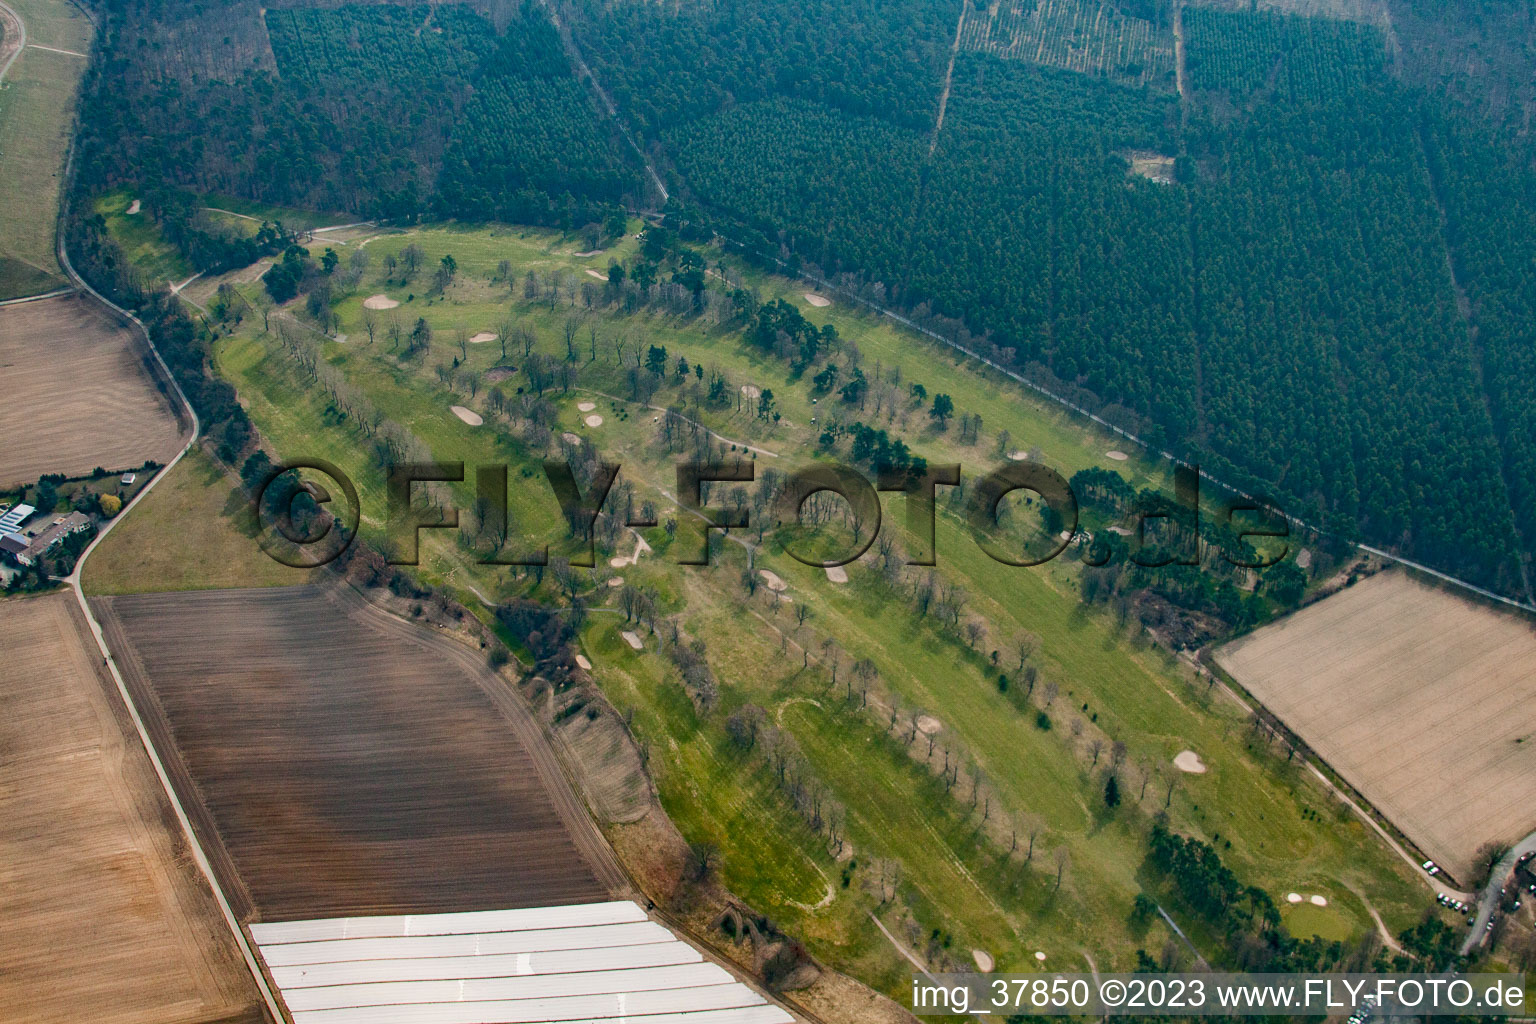 Photographie aérienne de Club de golf à Oftersheim dans le département Bade-Wurtemberg, Allemagne